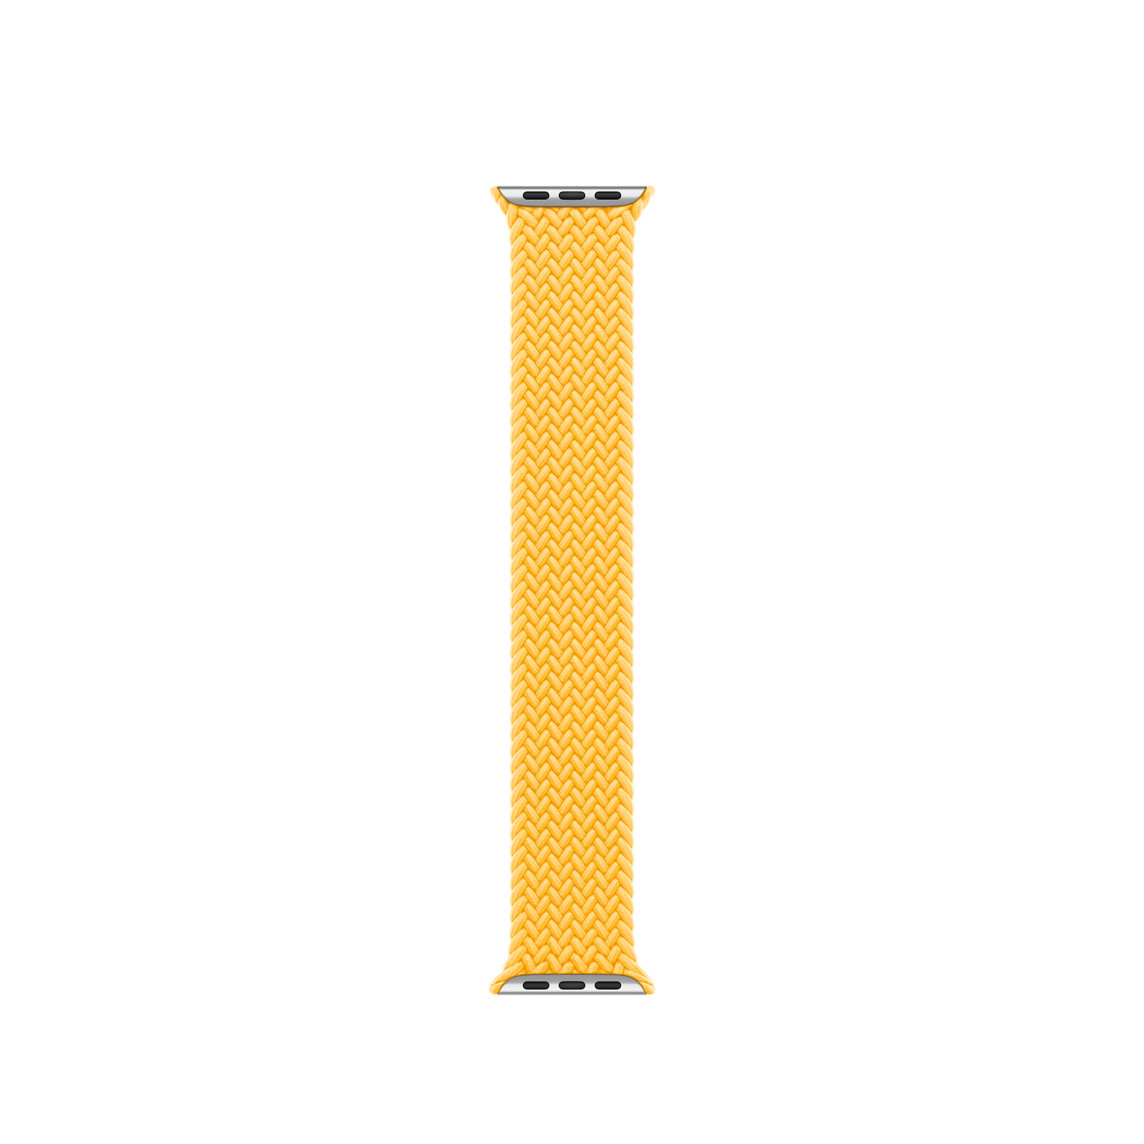 Correa Solo Loop trenzada amarillo solar de poliéster trenzado con hilos de silicona sin cierres ni hebillas